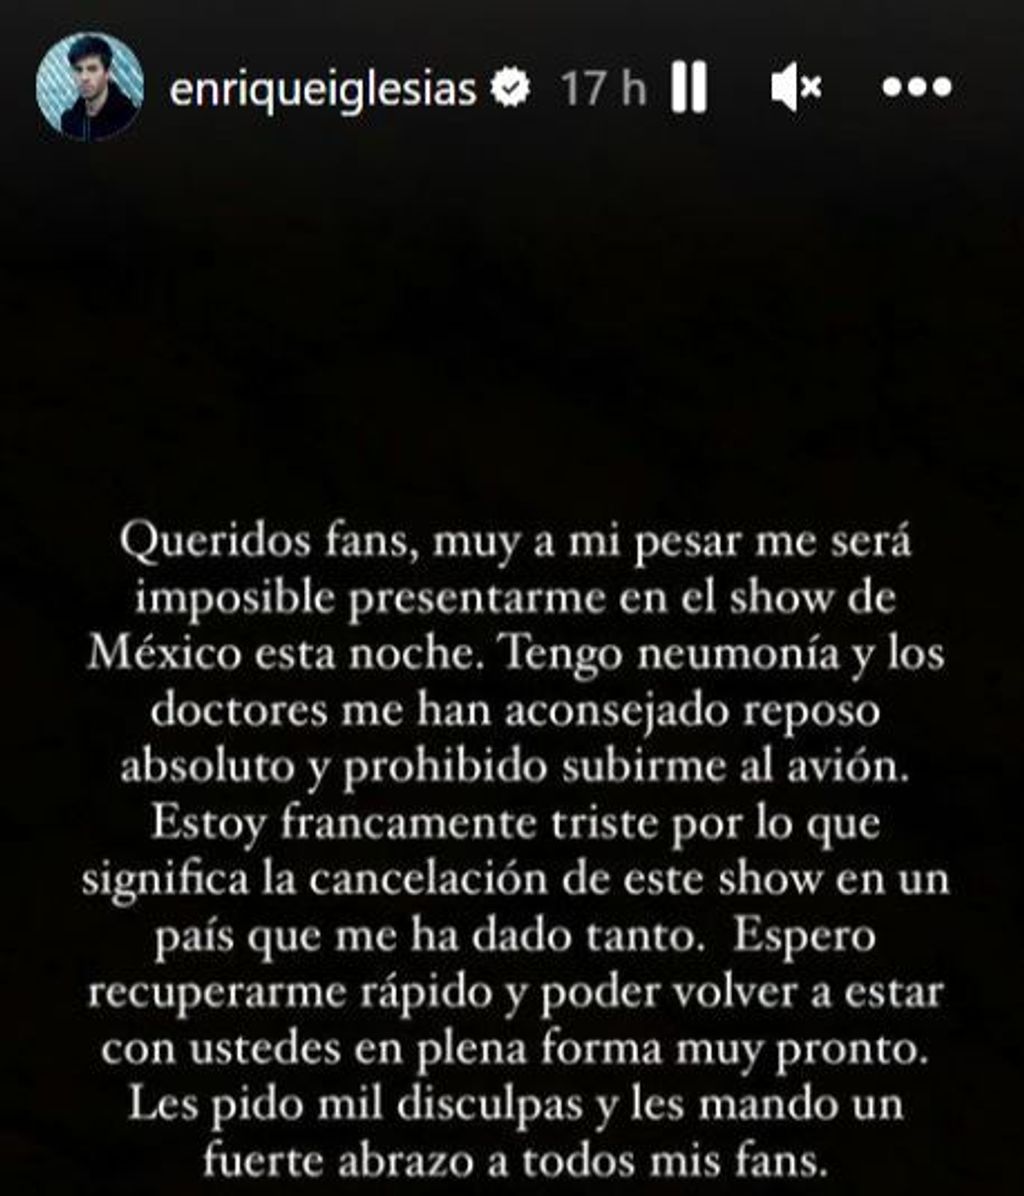 El comunicado de Enrique Iglesias